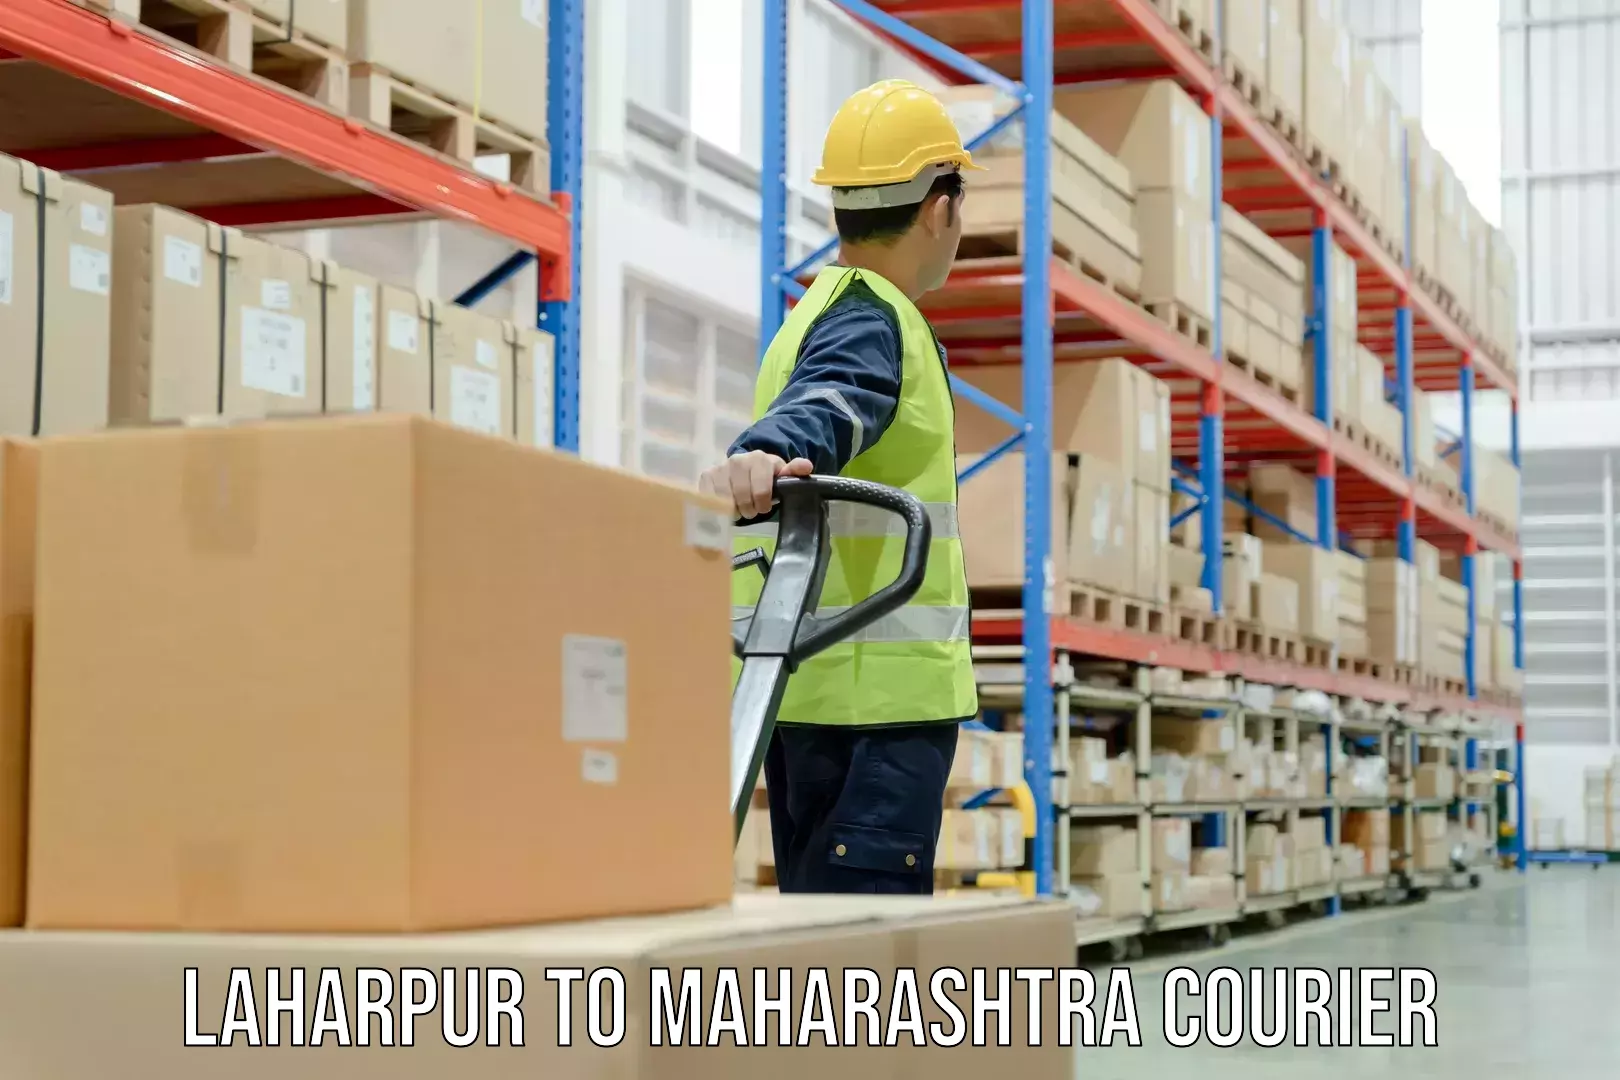 24/7 shipping services Laharpur to Maharashtra